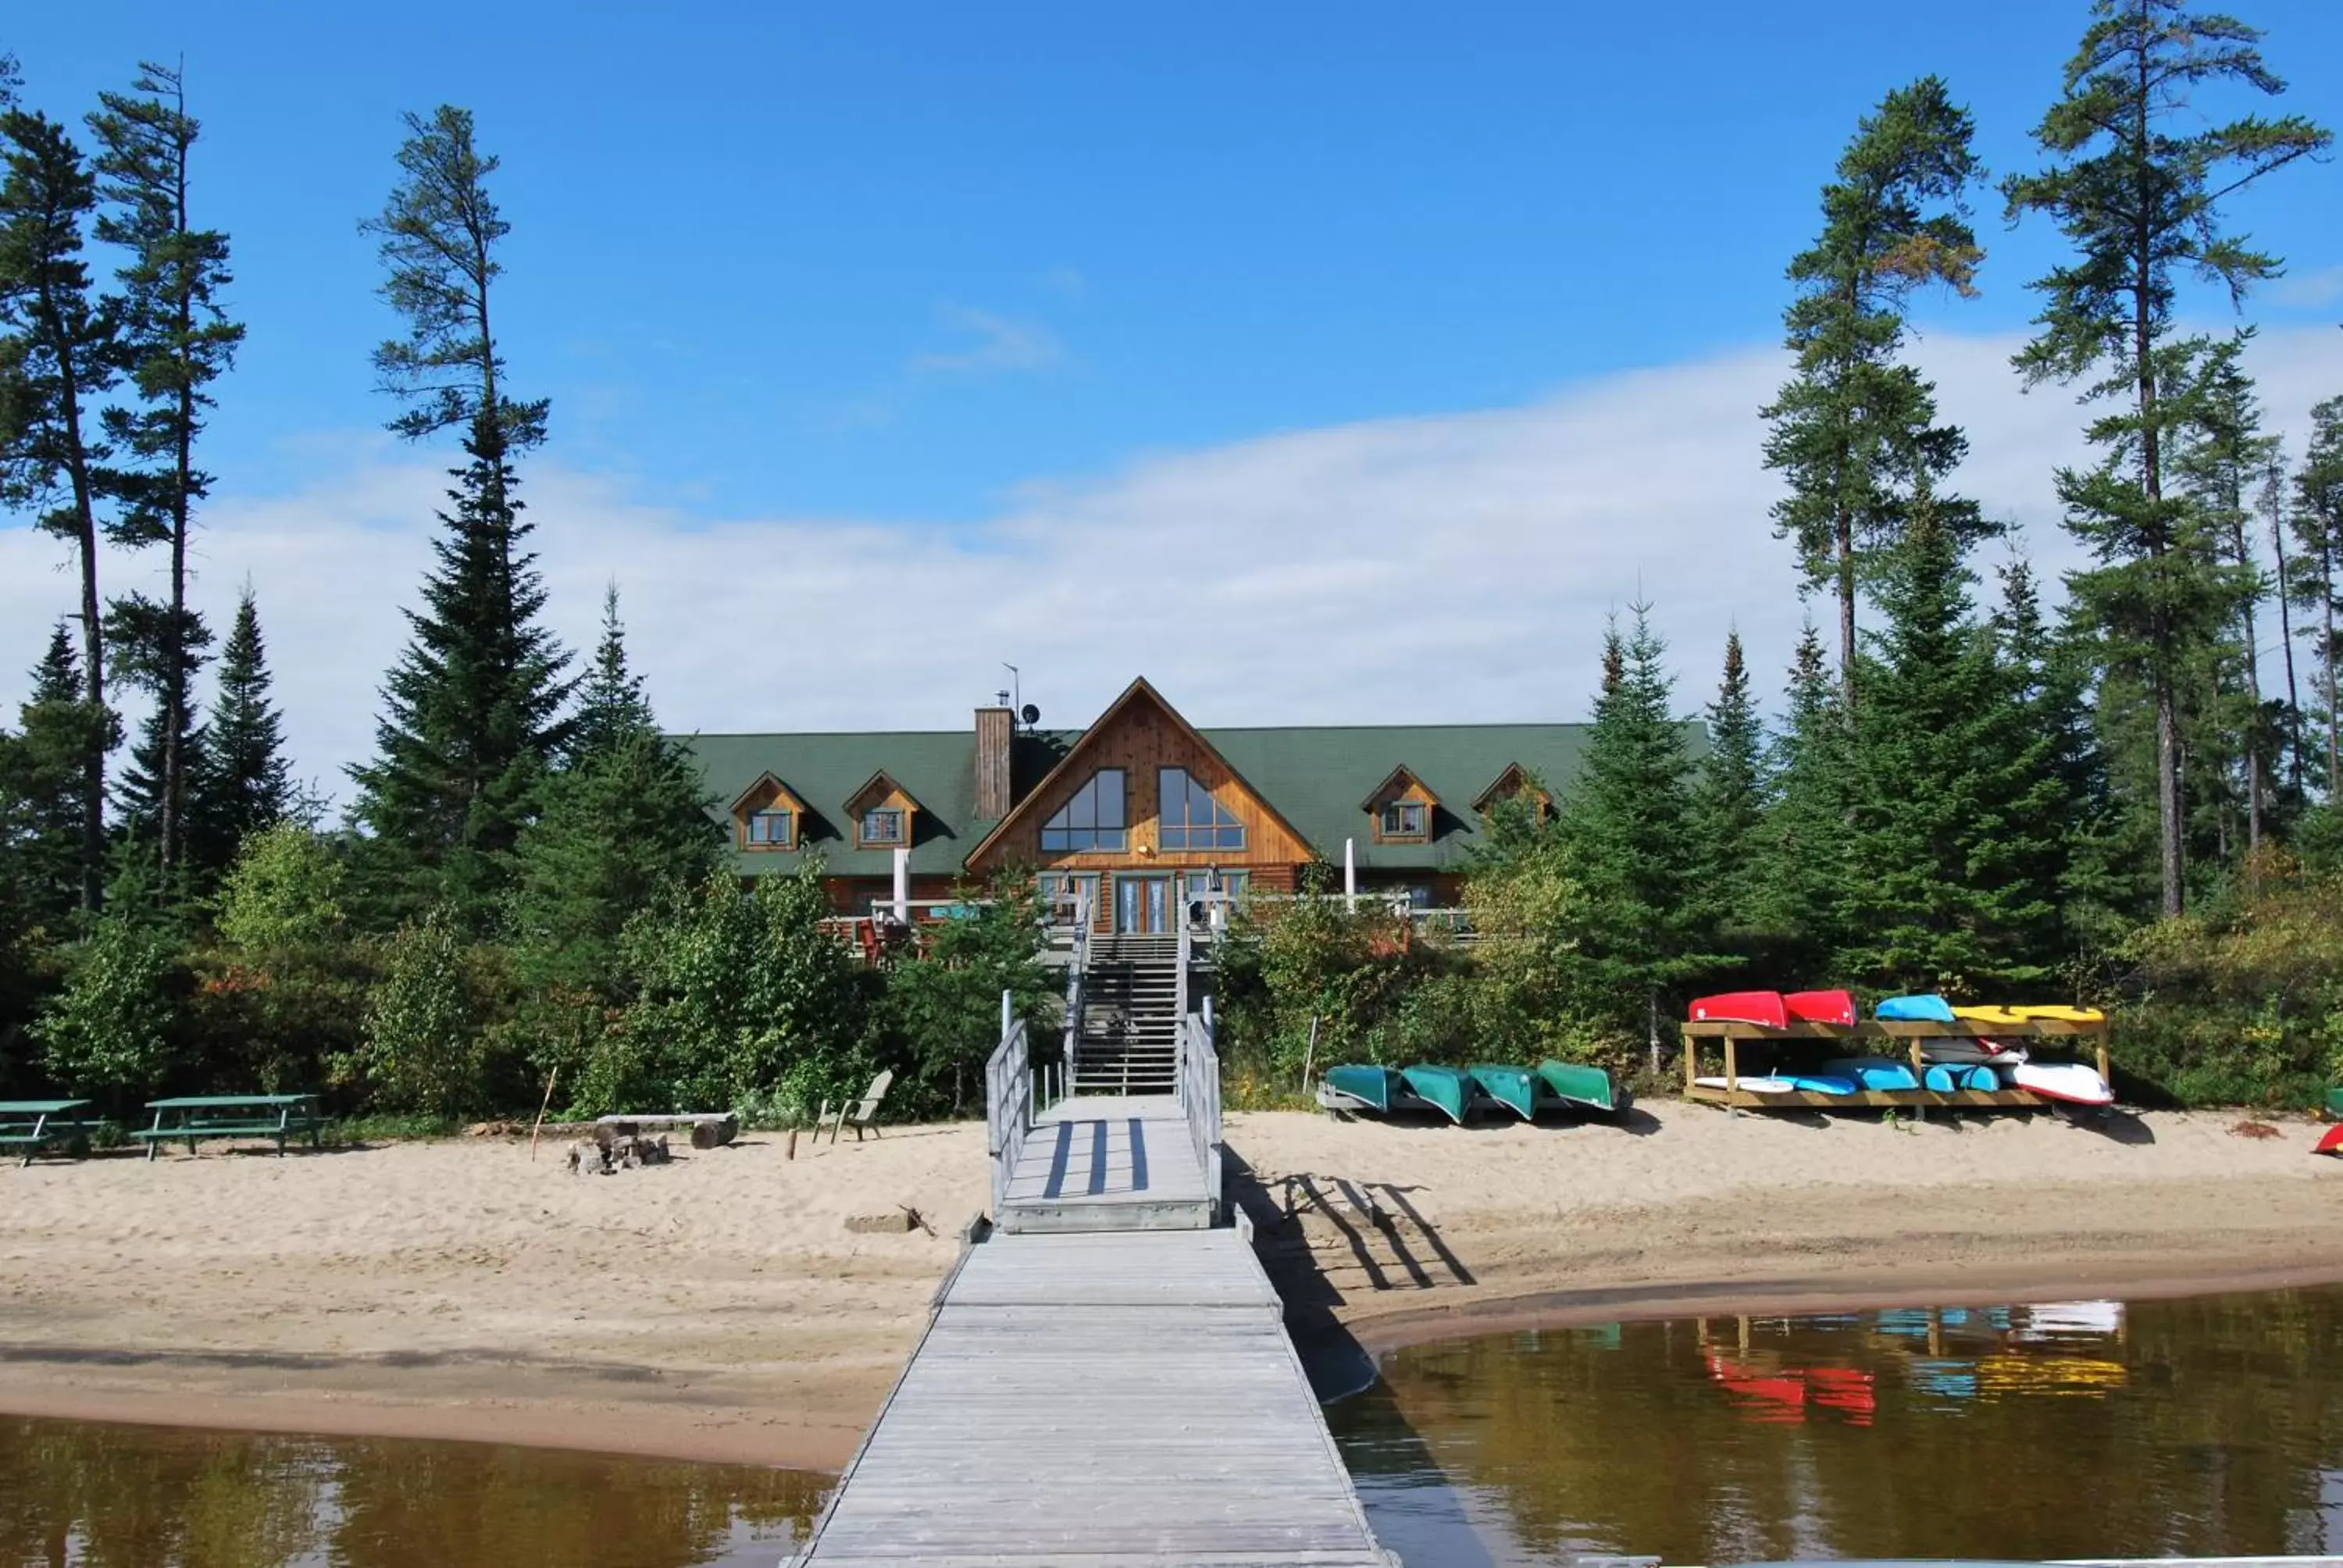 Property Building in Camp Taureau - Altaï Canada